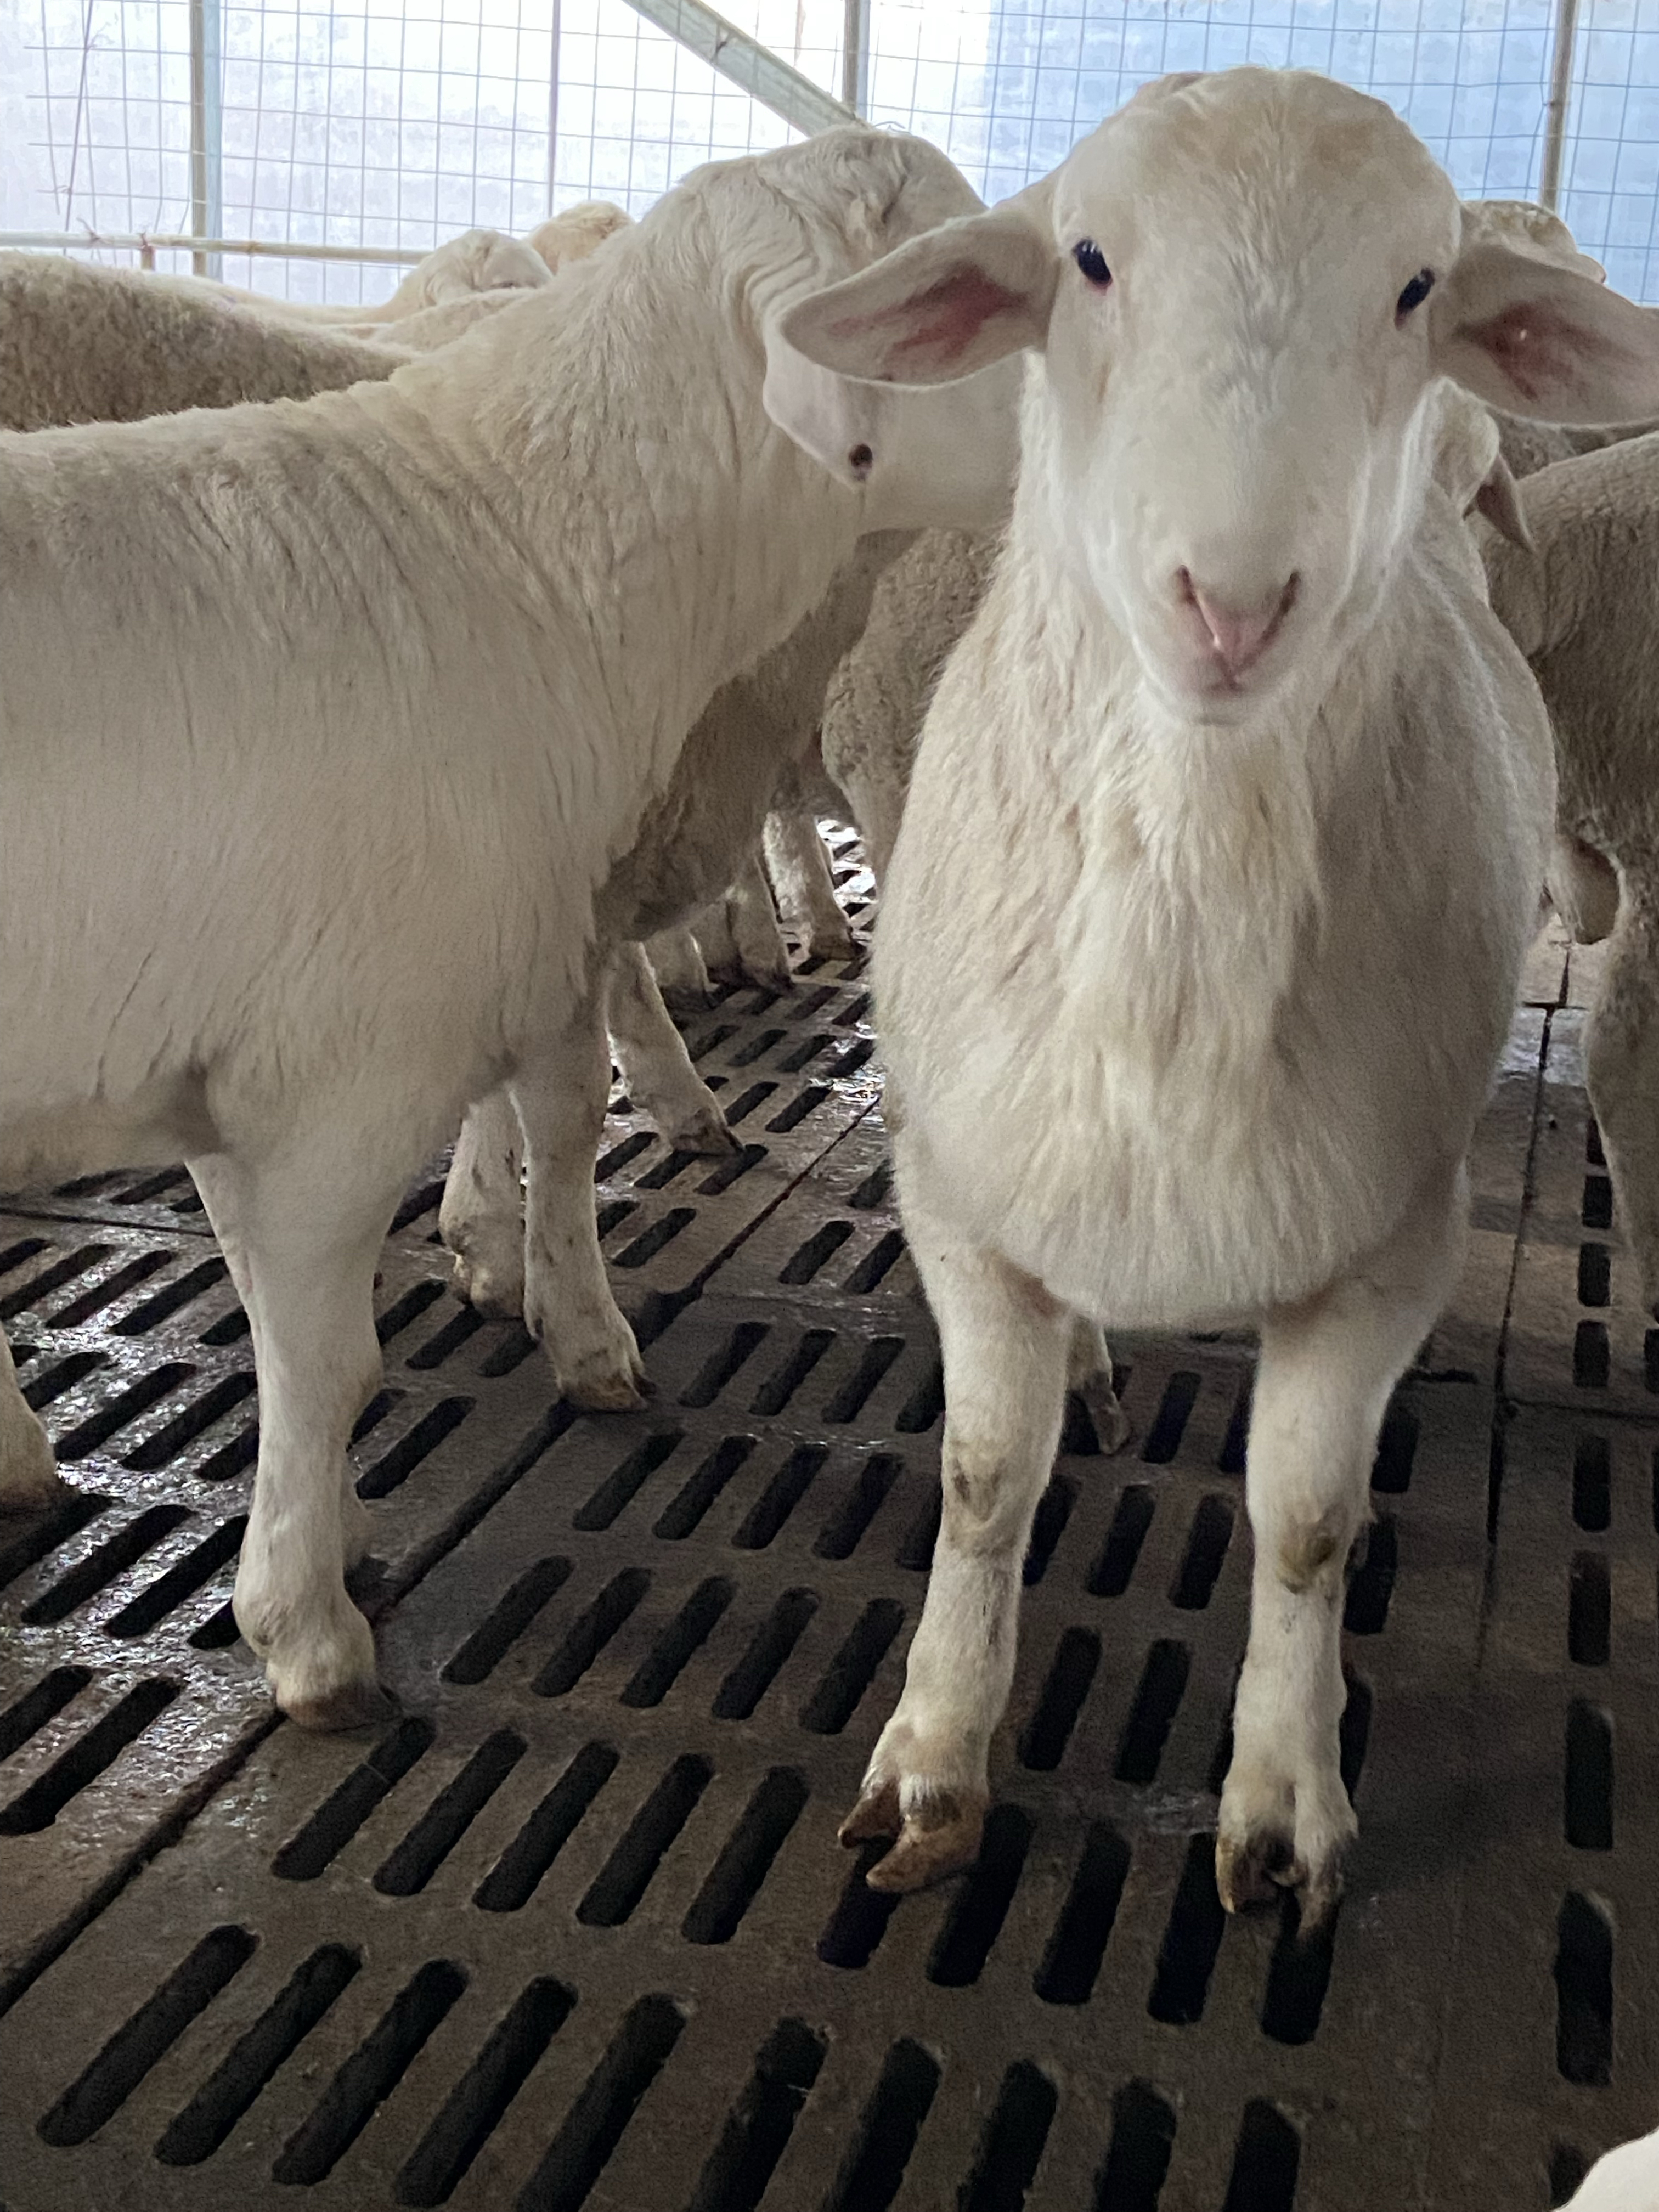 澳洲白绵羊价格与图片图片